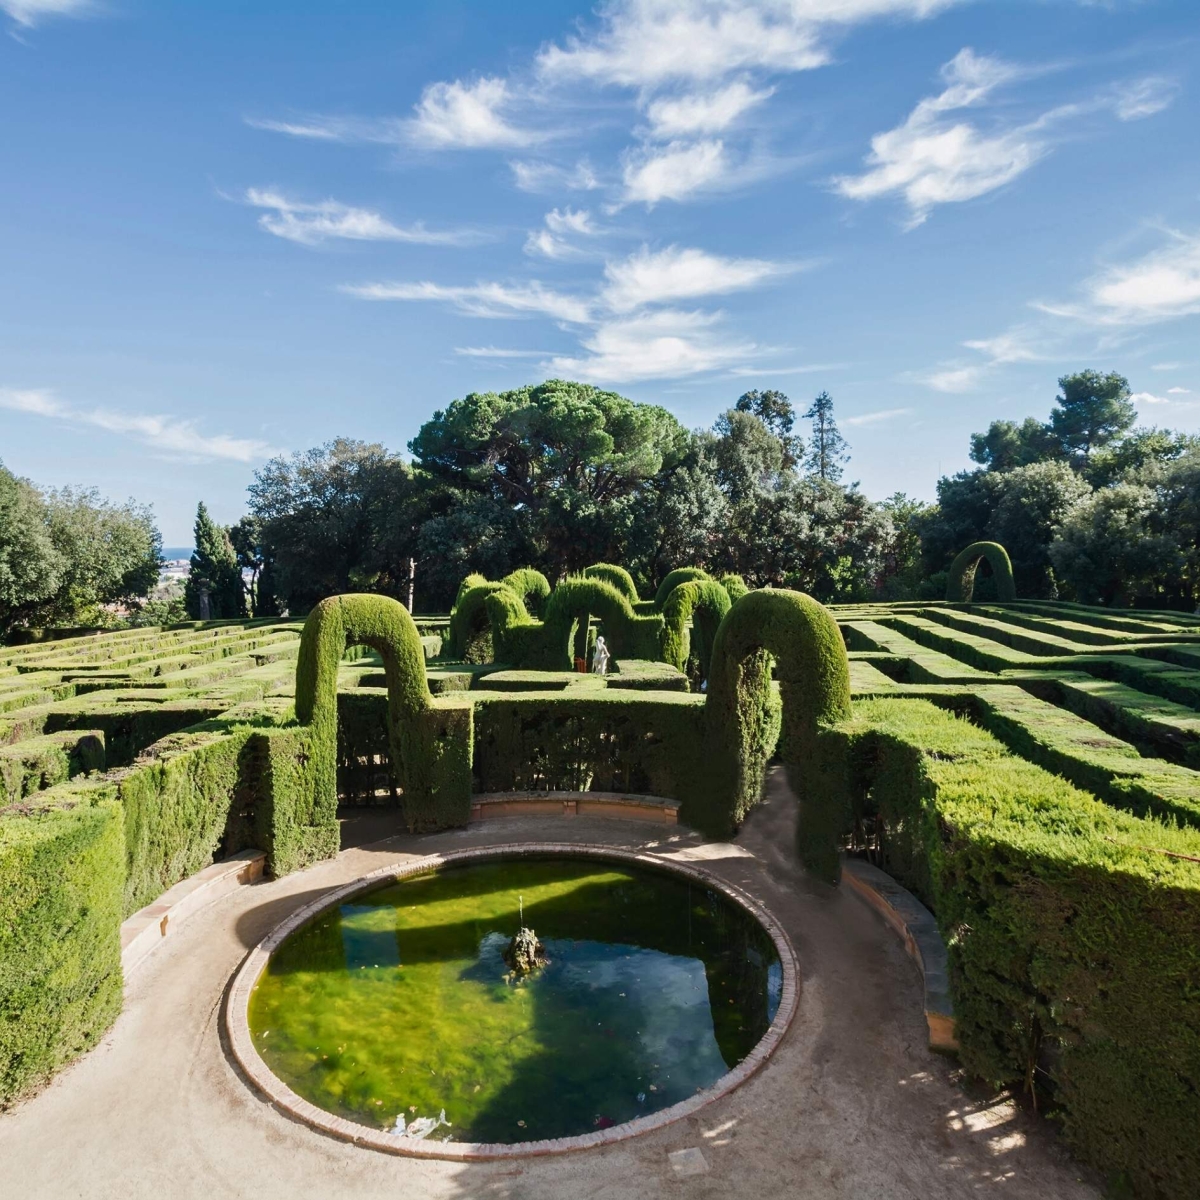 Парк-лабиринт Орта, иногда называемый садами Лаберинт Орта, — это исторический сад в районе Орта-Гинардо в Барселоне и старейший в своем роде в городе.